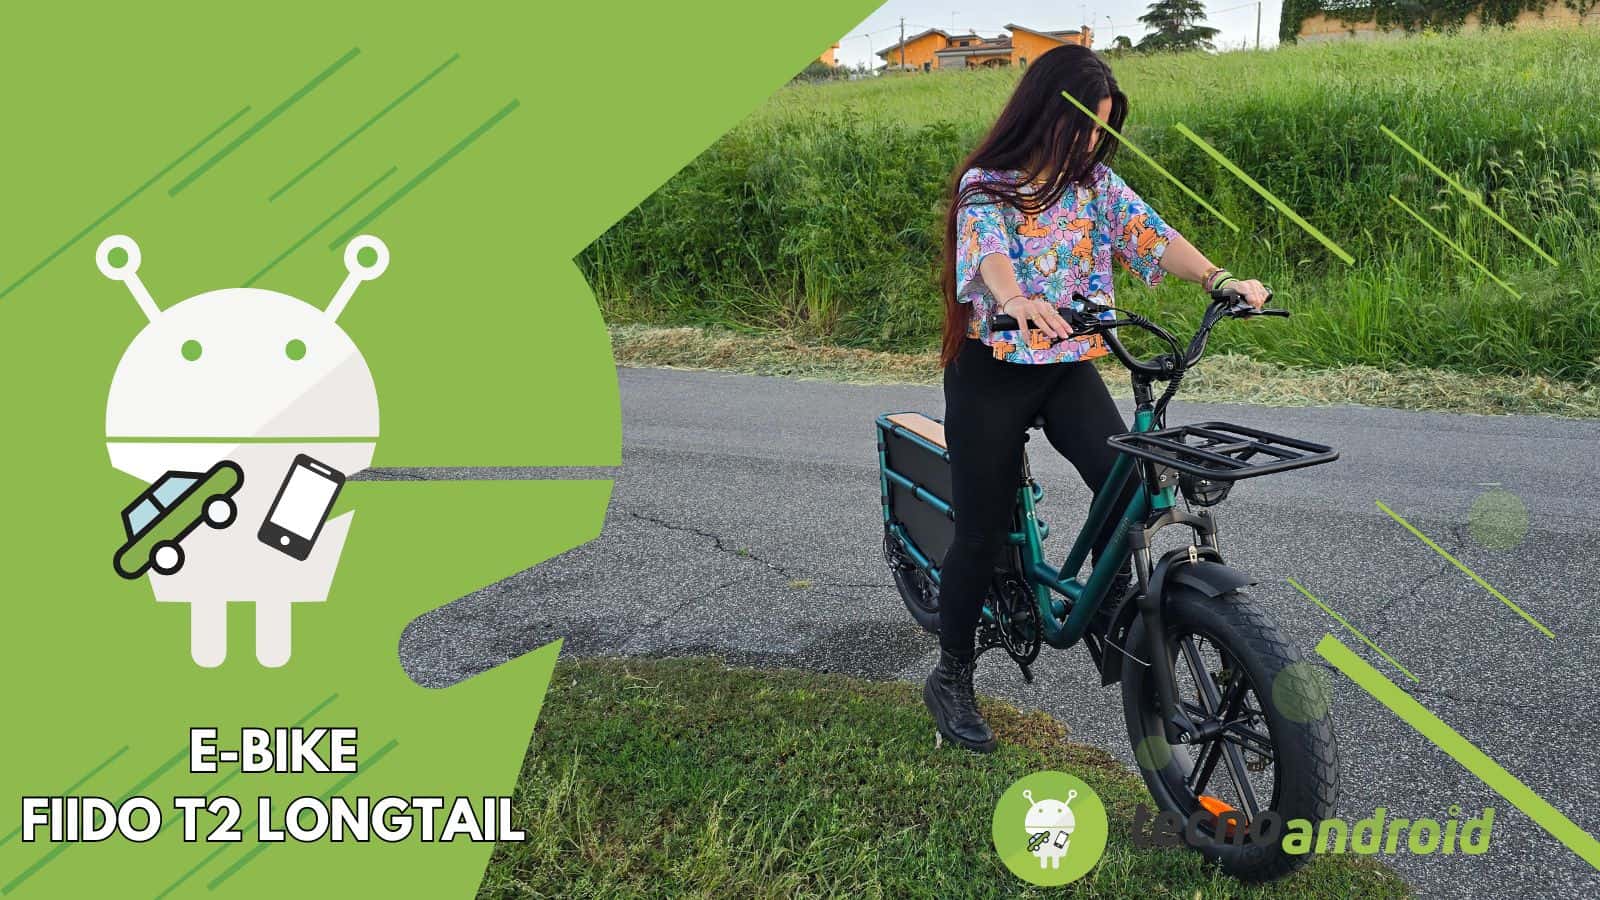 Cargo E-Bike FIIDO T2 Longtail, la super bici elettrica versatile per tutti i giorni